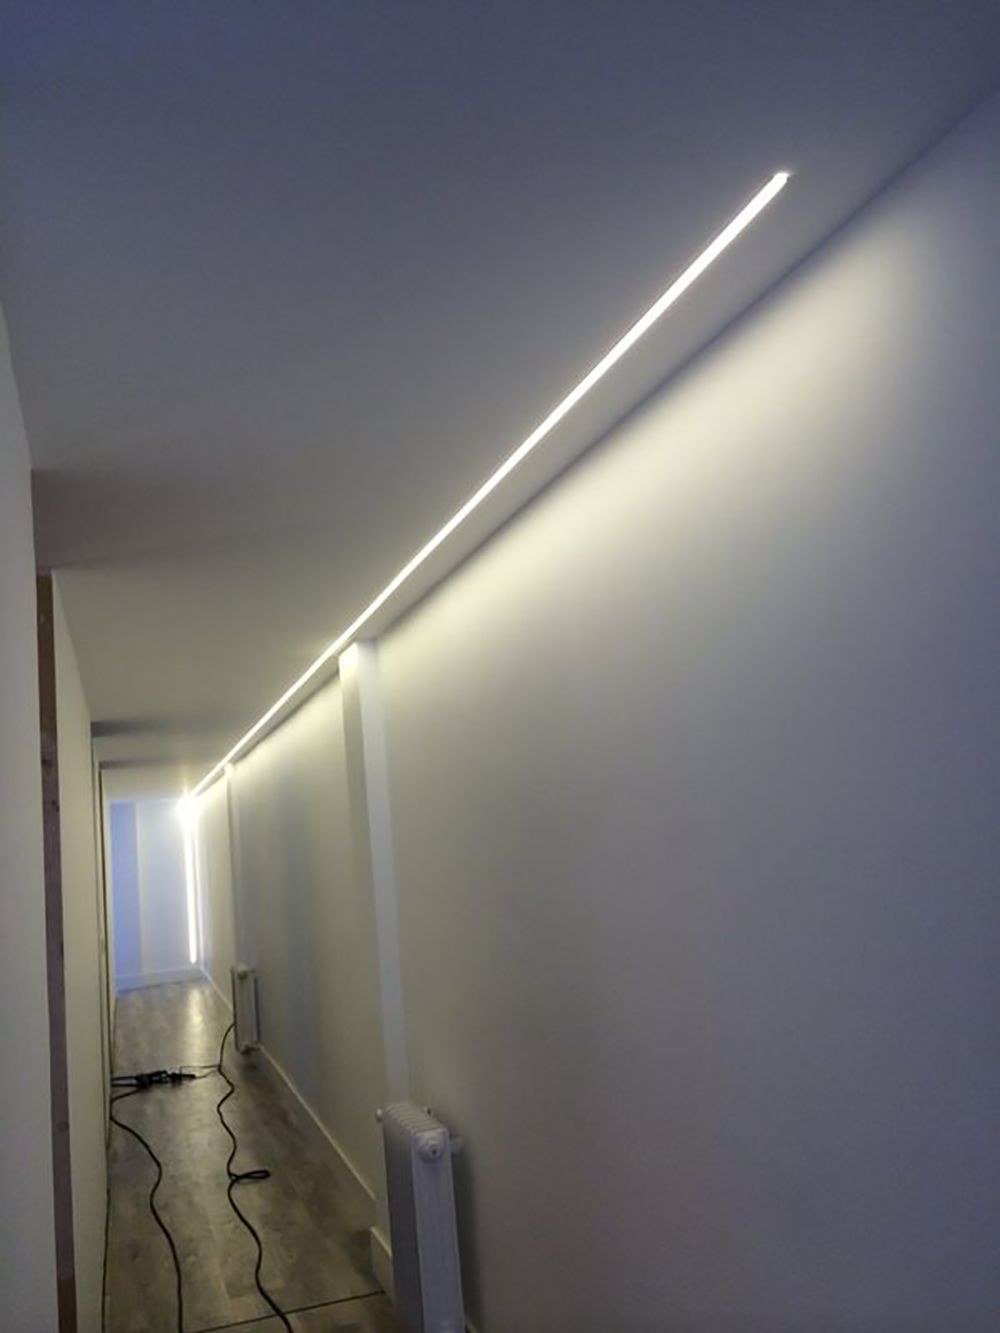 Освещенного снизу. Светодиодная лента, подсветка снизу. Linea Light trade 63196 линейный светильник. Светодиодная подсветка в коридоре. Освещение коридора светодиодной лентой.